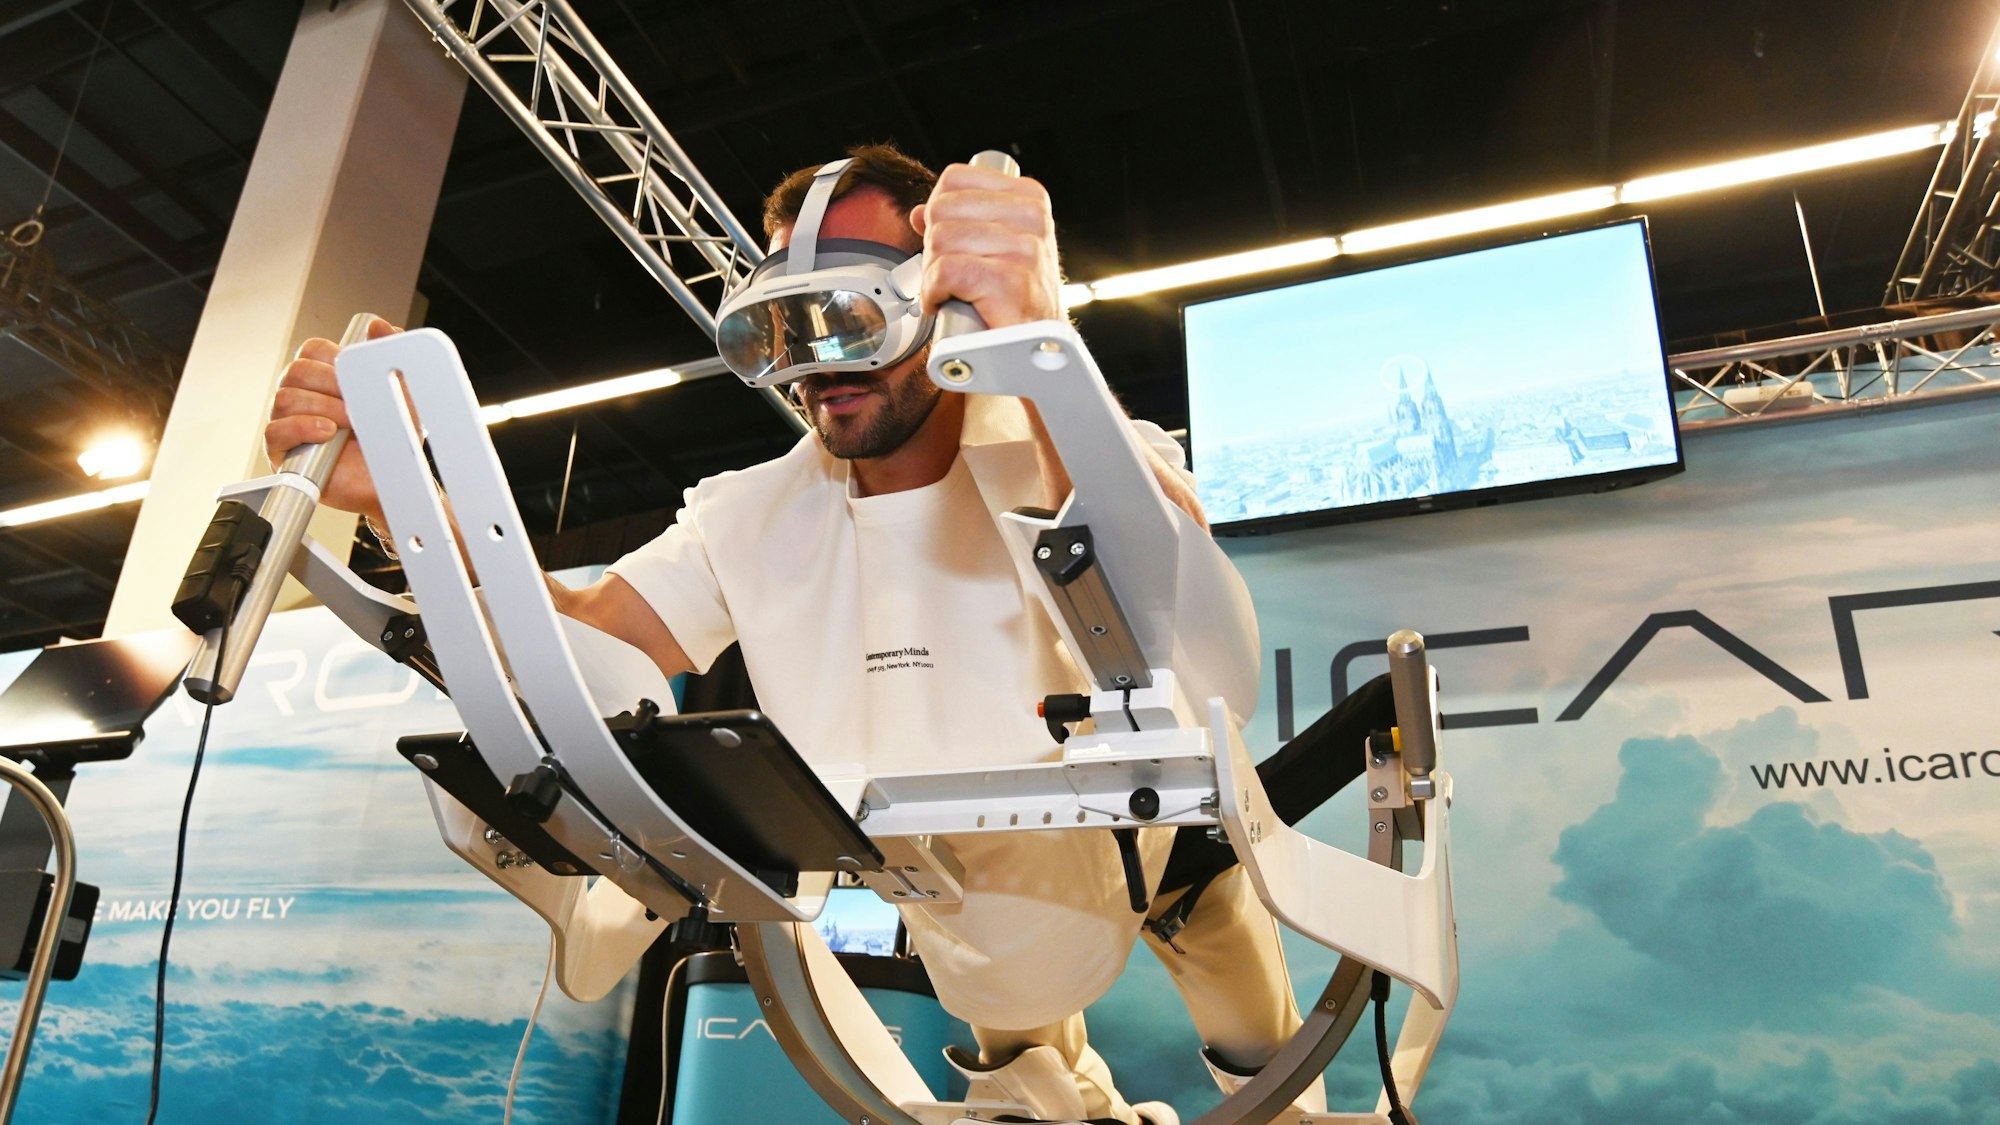 Personal Trainer Manuel Gajus liegt in Supermann-Pose auf dem ICAROS Gerät und hat eine VR-Brille an. Auf dem Bildschirm im Hintergrund sieht man den Kölner Dom.